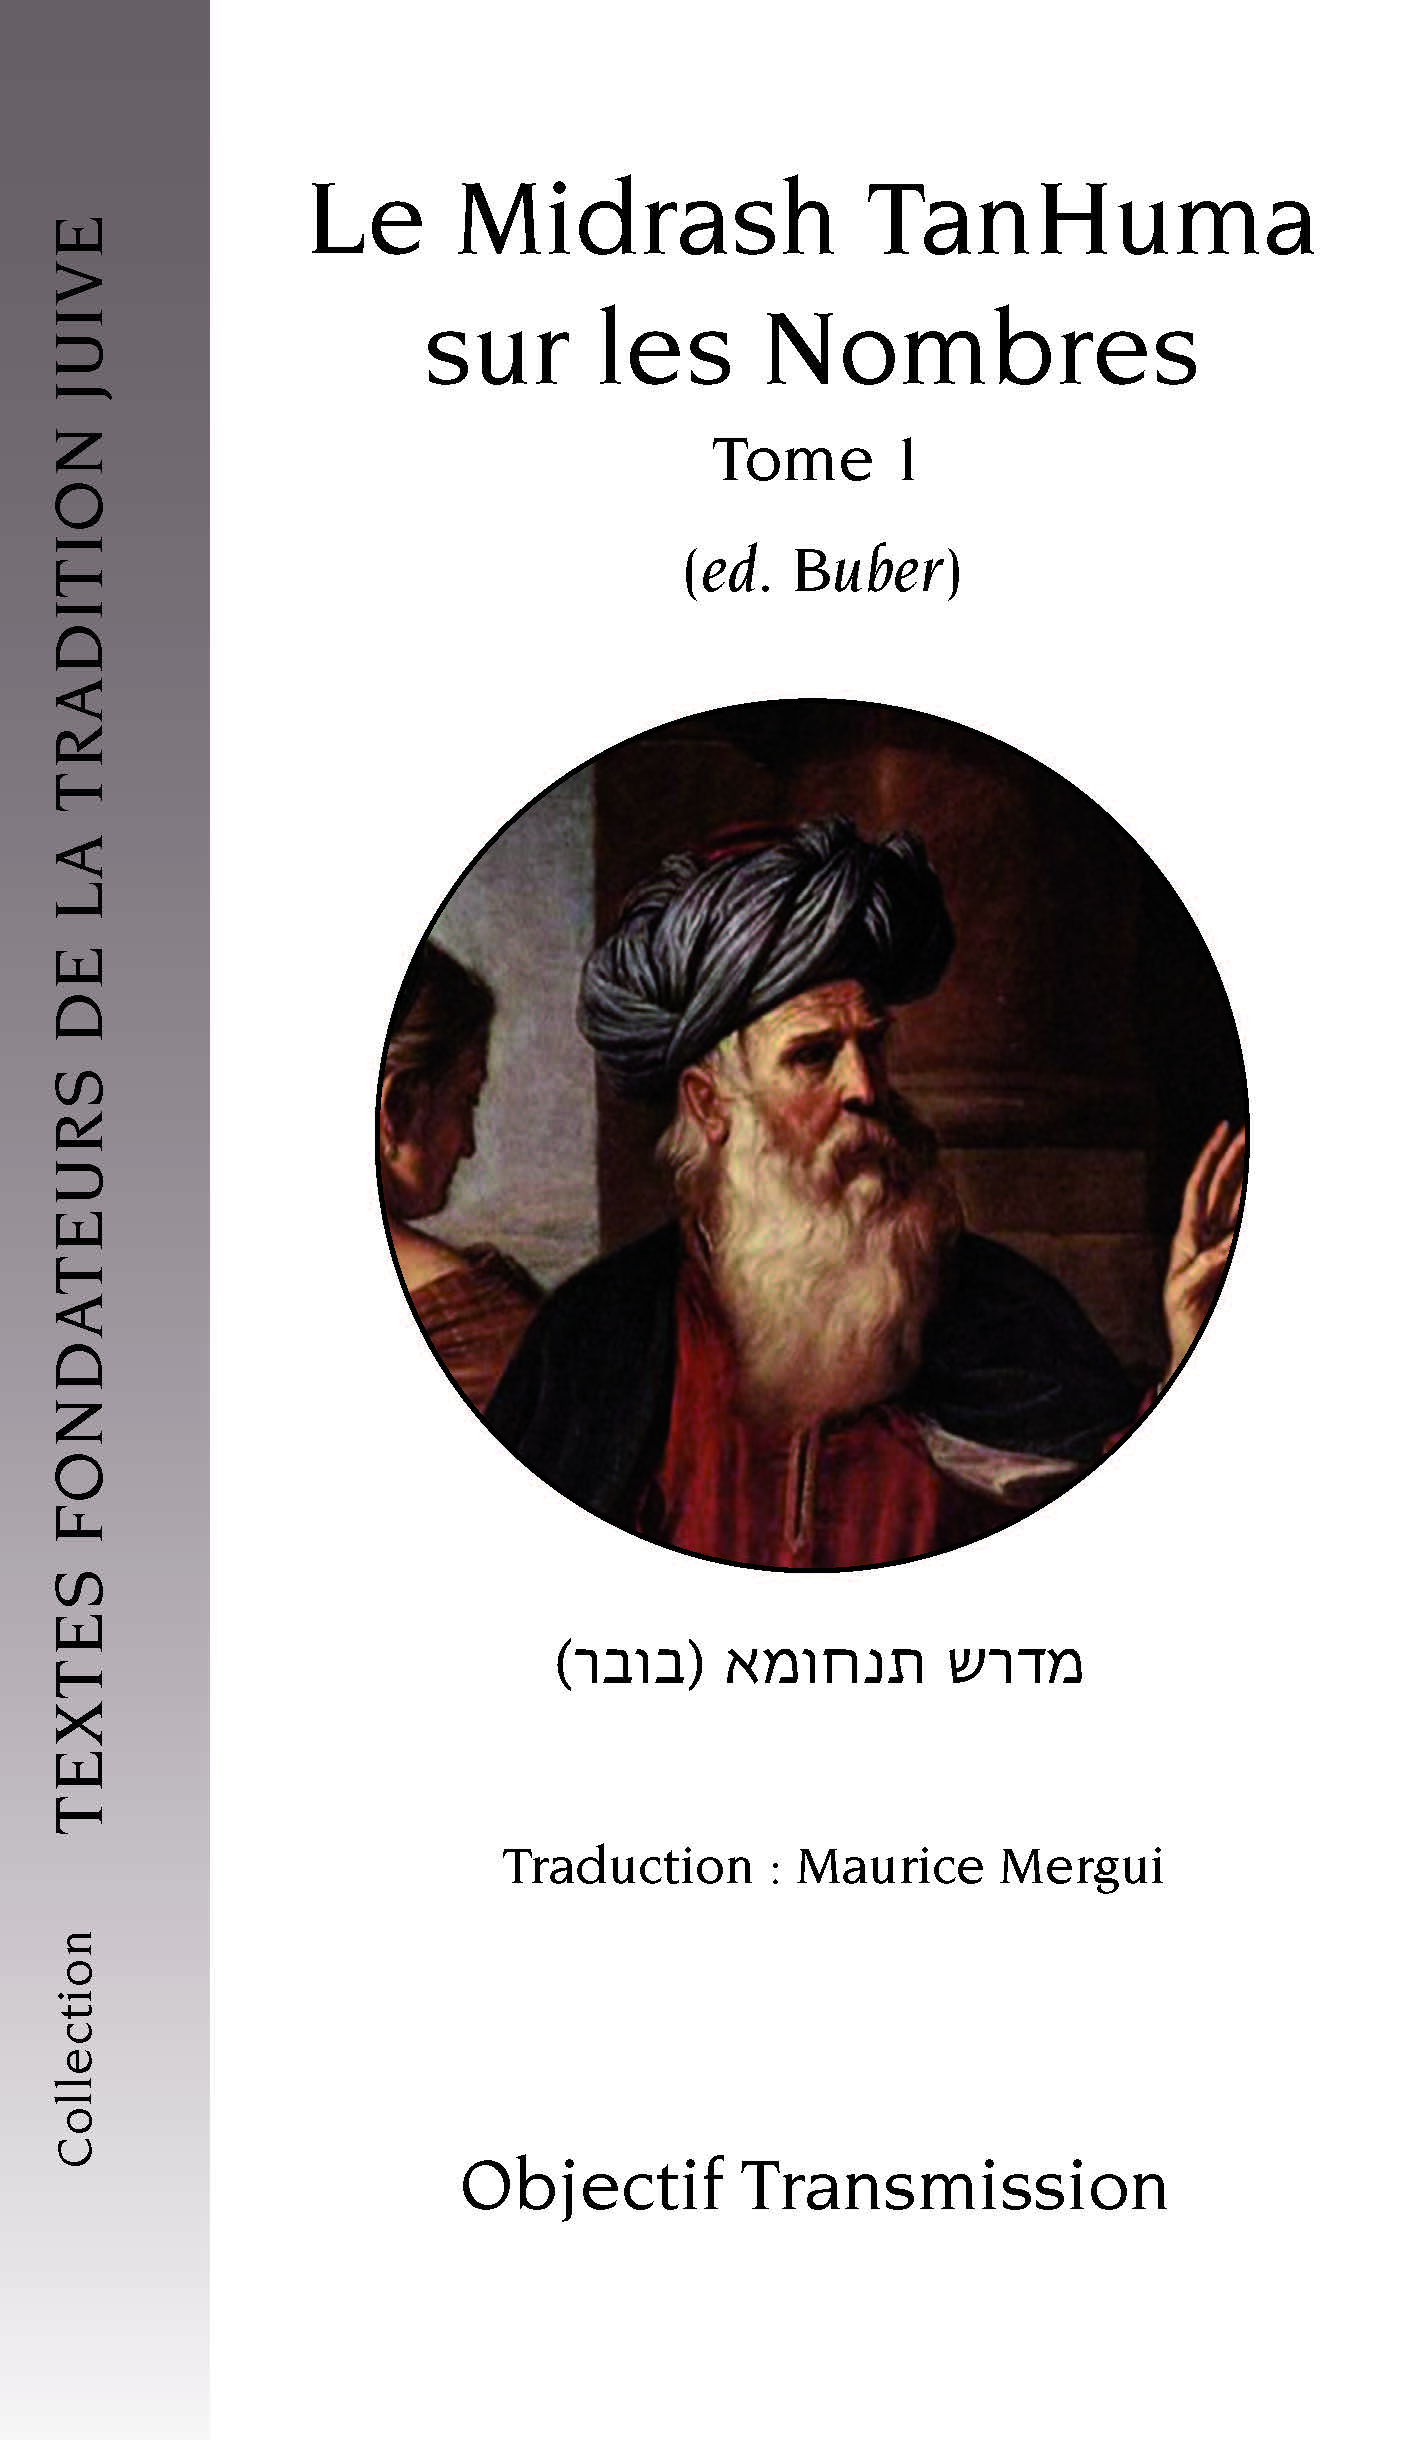 Le Midrash TanHuma sur les Nombres (version Buber) Tome 3 